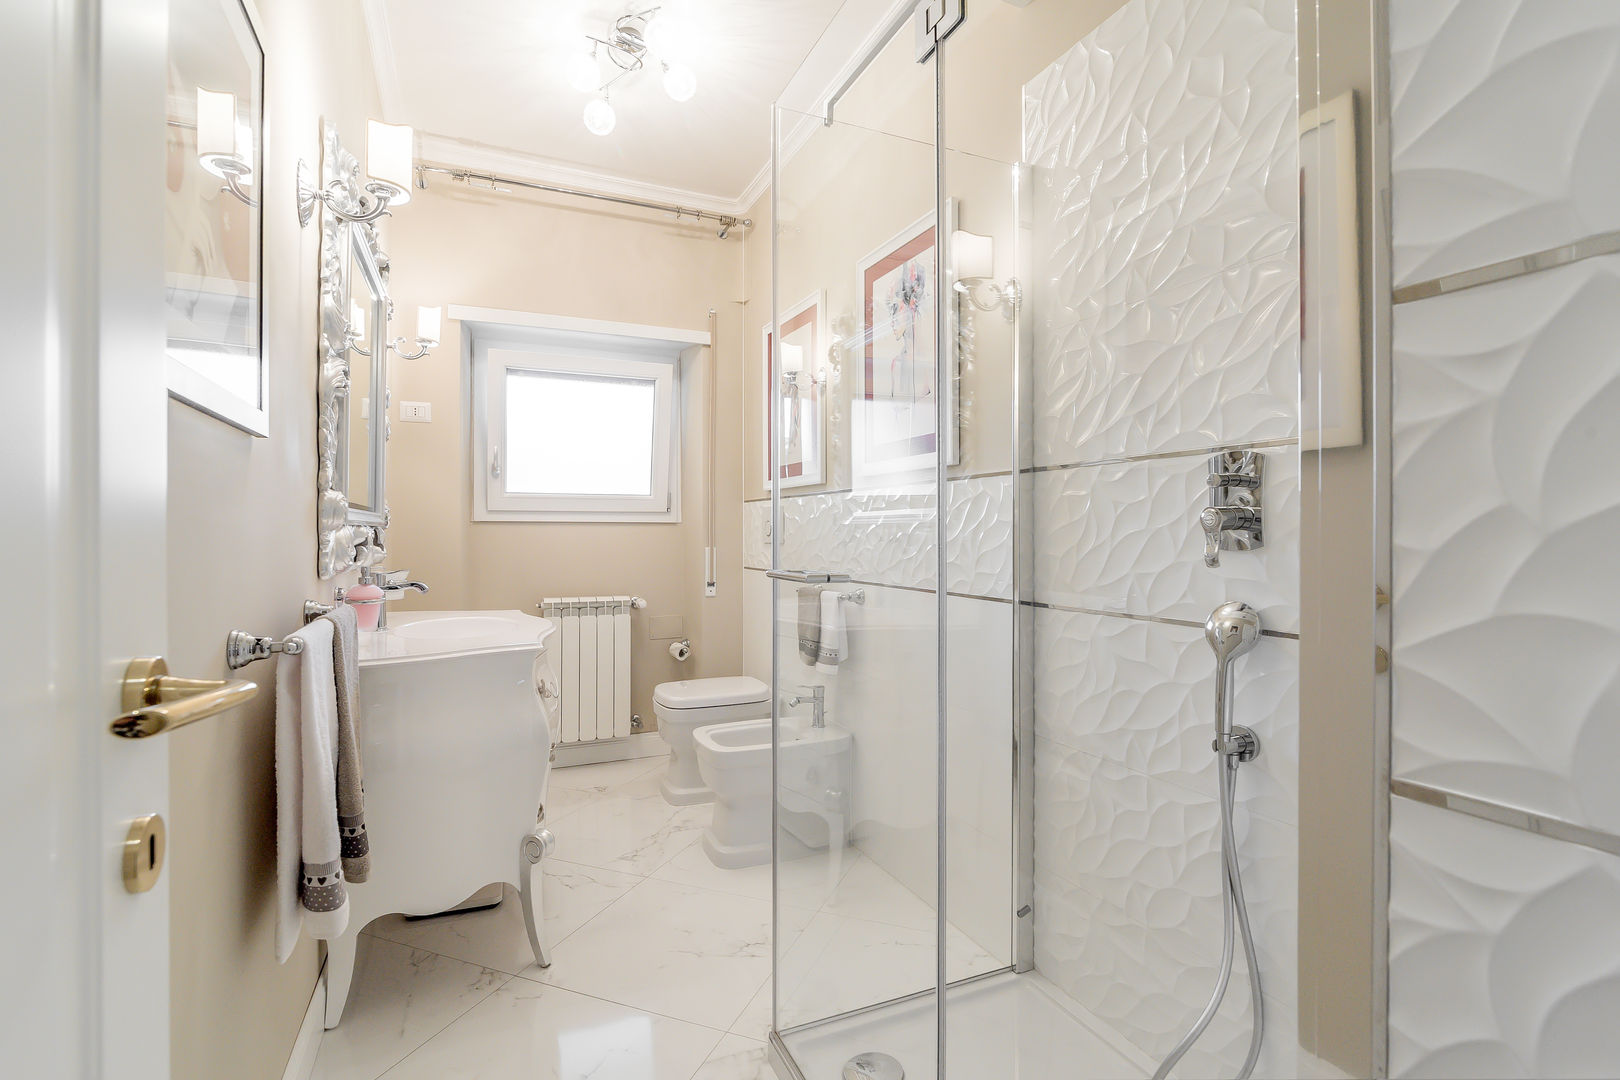 Ristrutturazione appartamento Roma: Nuova disposizione degli spazi, Facile Ristrutturare Facile Ristrutturare Classic style bathroom